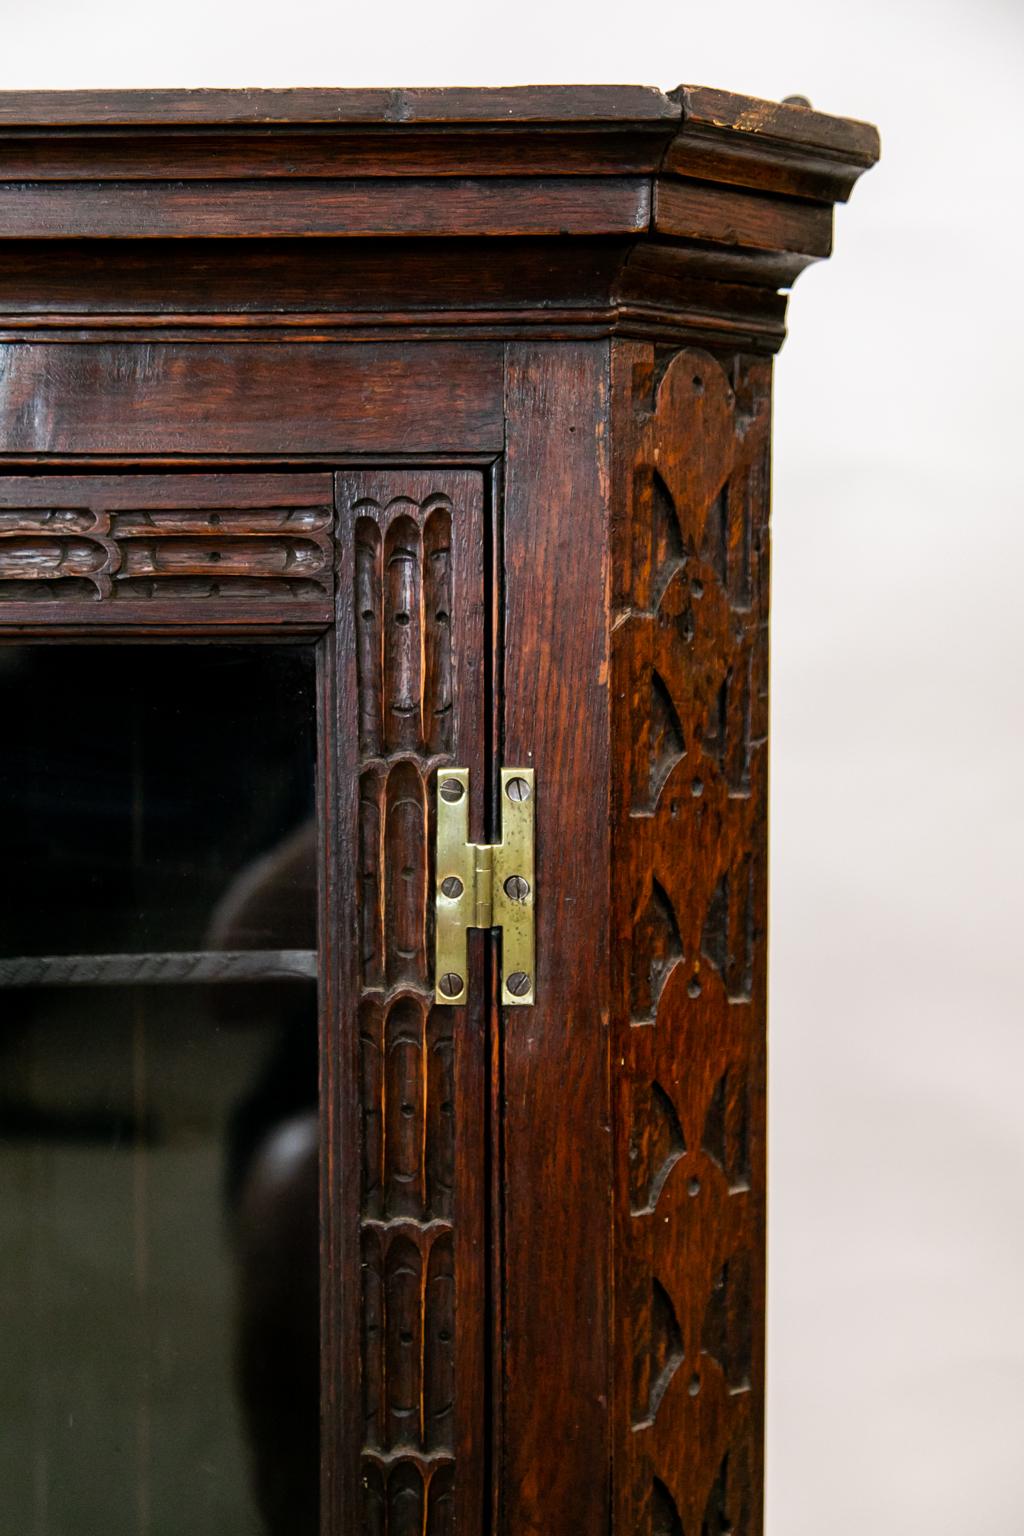 Die Tür dieses Hänge-Eckschranks aus Eiche ist mit einer sich wiederholenden Kannelierung versehen. Die seitlichen Rückwände sind mit stilisierten Tränen geschnitzt. Der Innenraum ist mit zwei festen Schmetterlingsregalen ausgestattet.